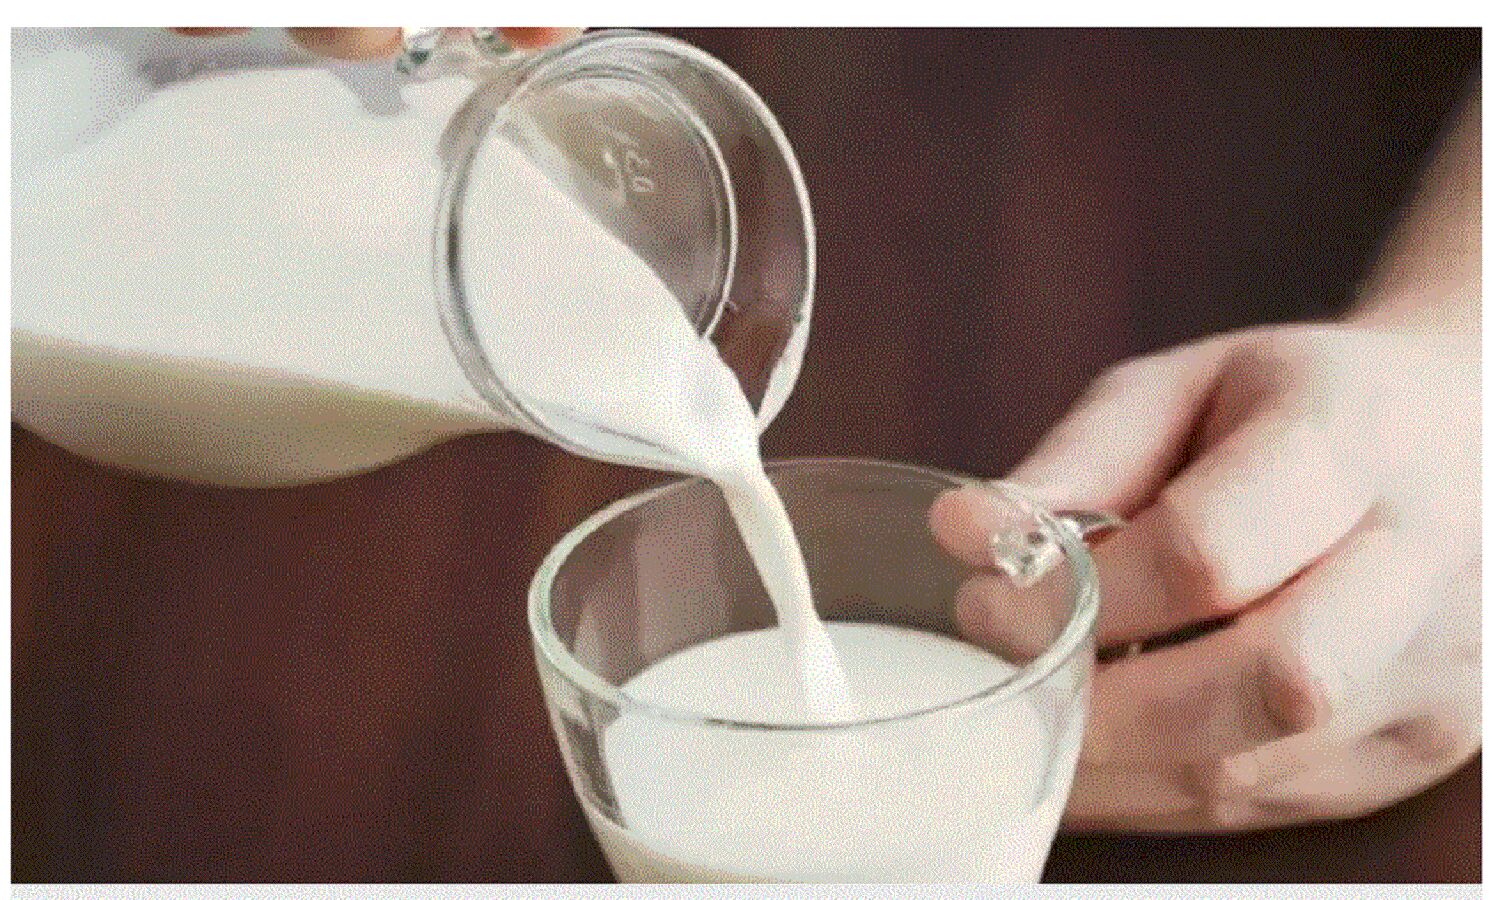 मुद्रास्फीति का रहा यही हाल तो दूध का आम आदमी को करेगा बेहाल